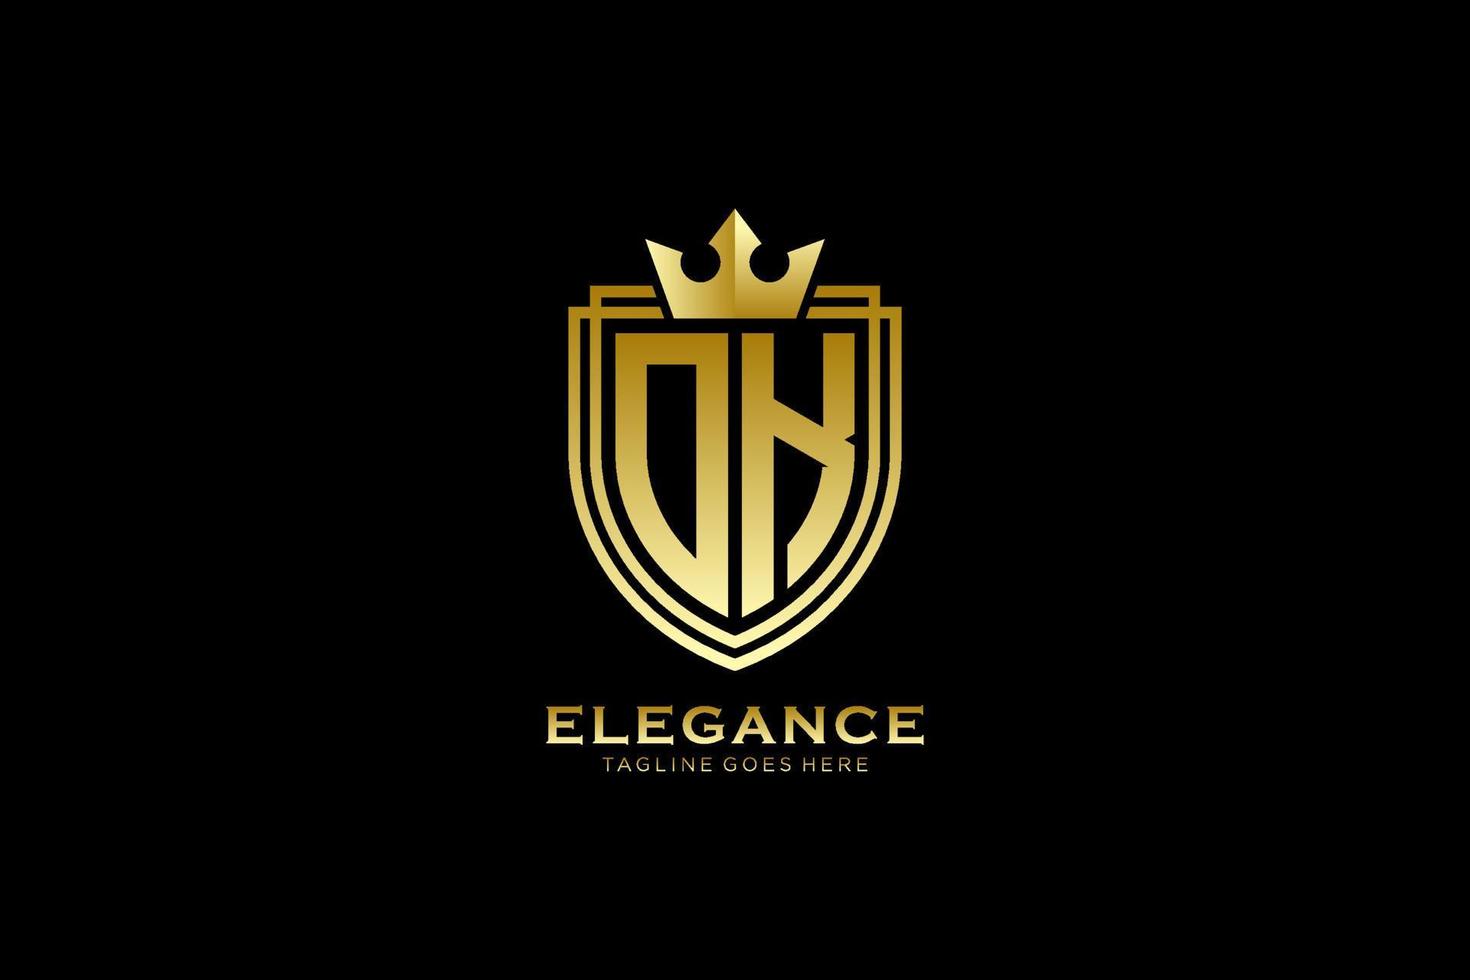 logotipo de monograma de lujo elegante inicial o plantilla de insignia con pergaminos y corona real - perfecto para proyectos de marca de lujo vector